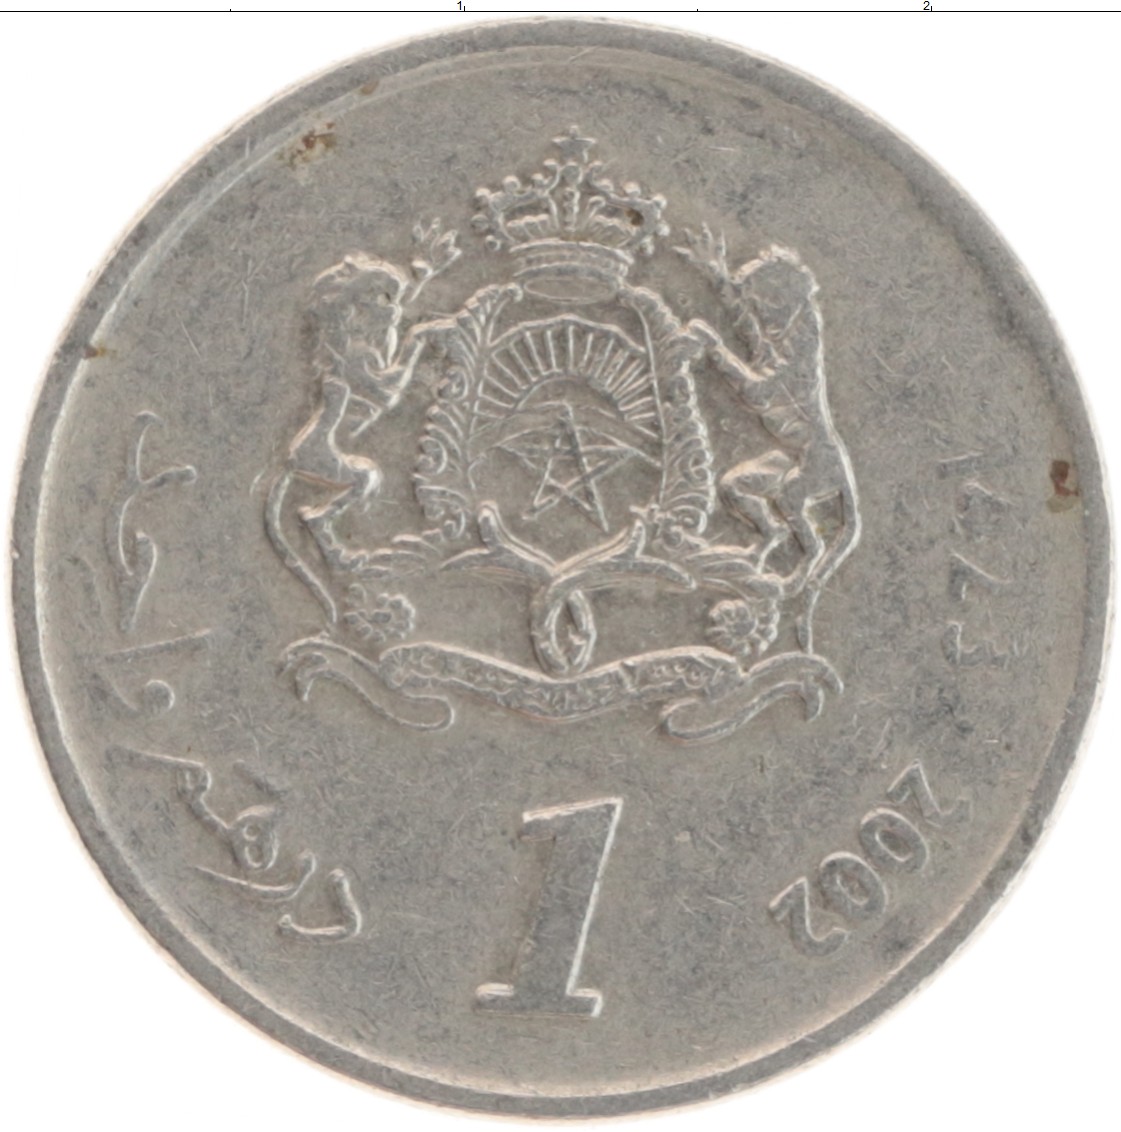 17200 дирхам. 10 Дирхам монета. 1 Дирхам монета. 100 Дирхам монета. Монета Марокко 2002.